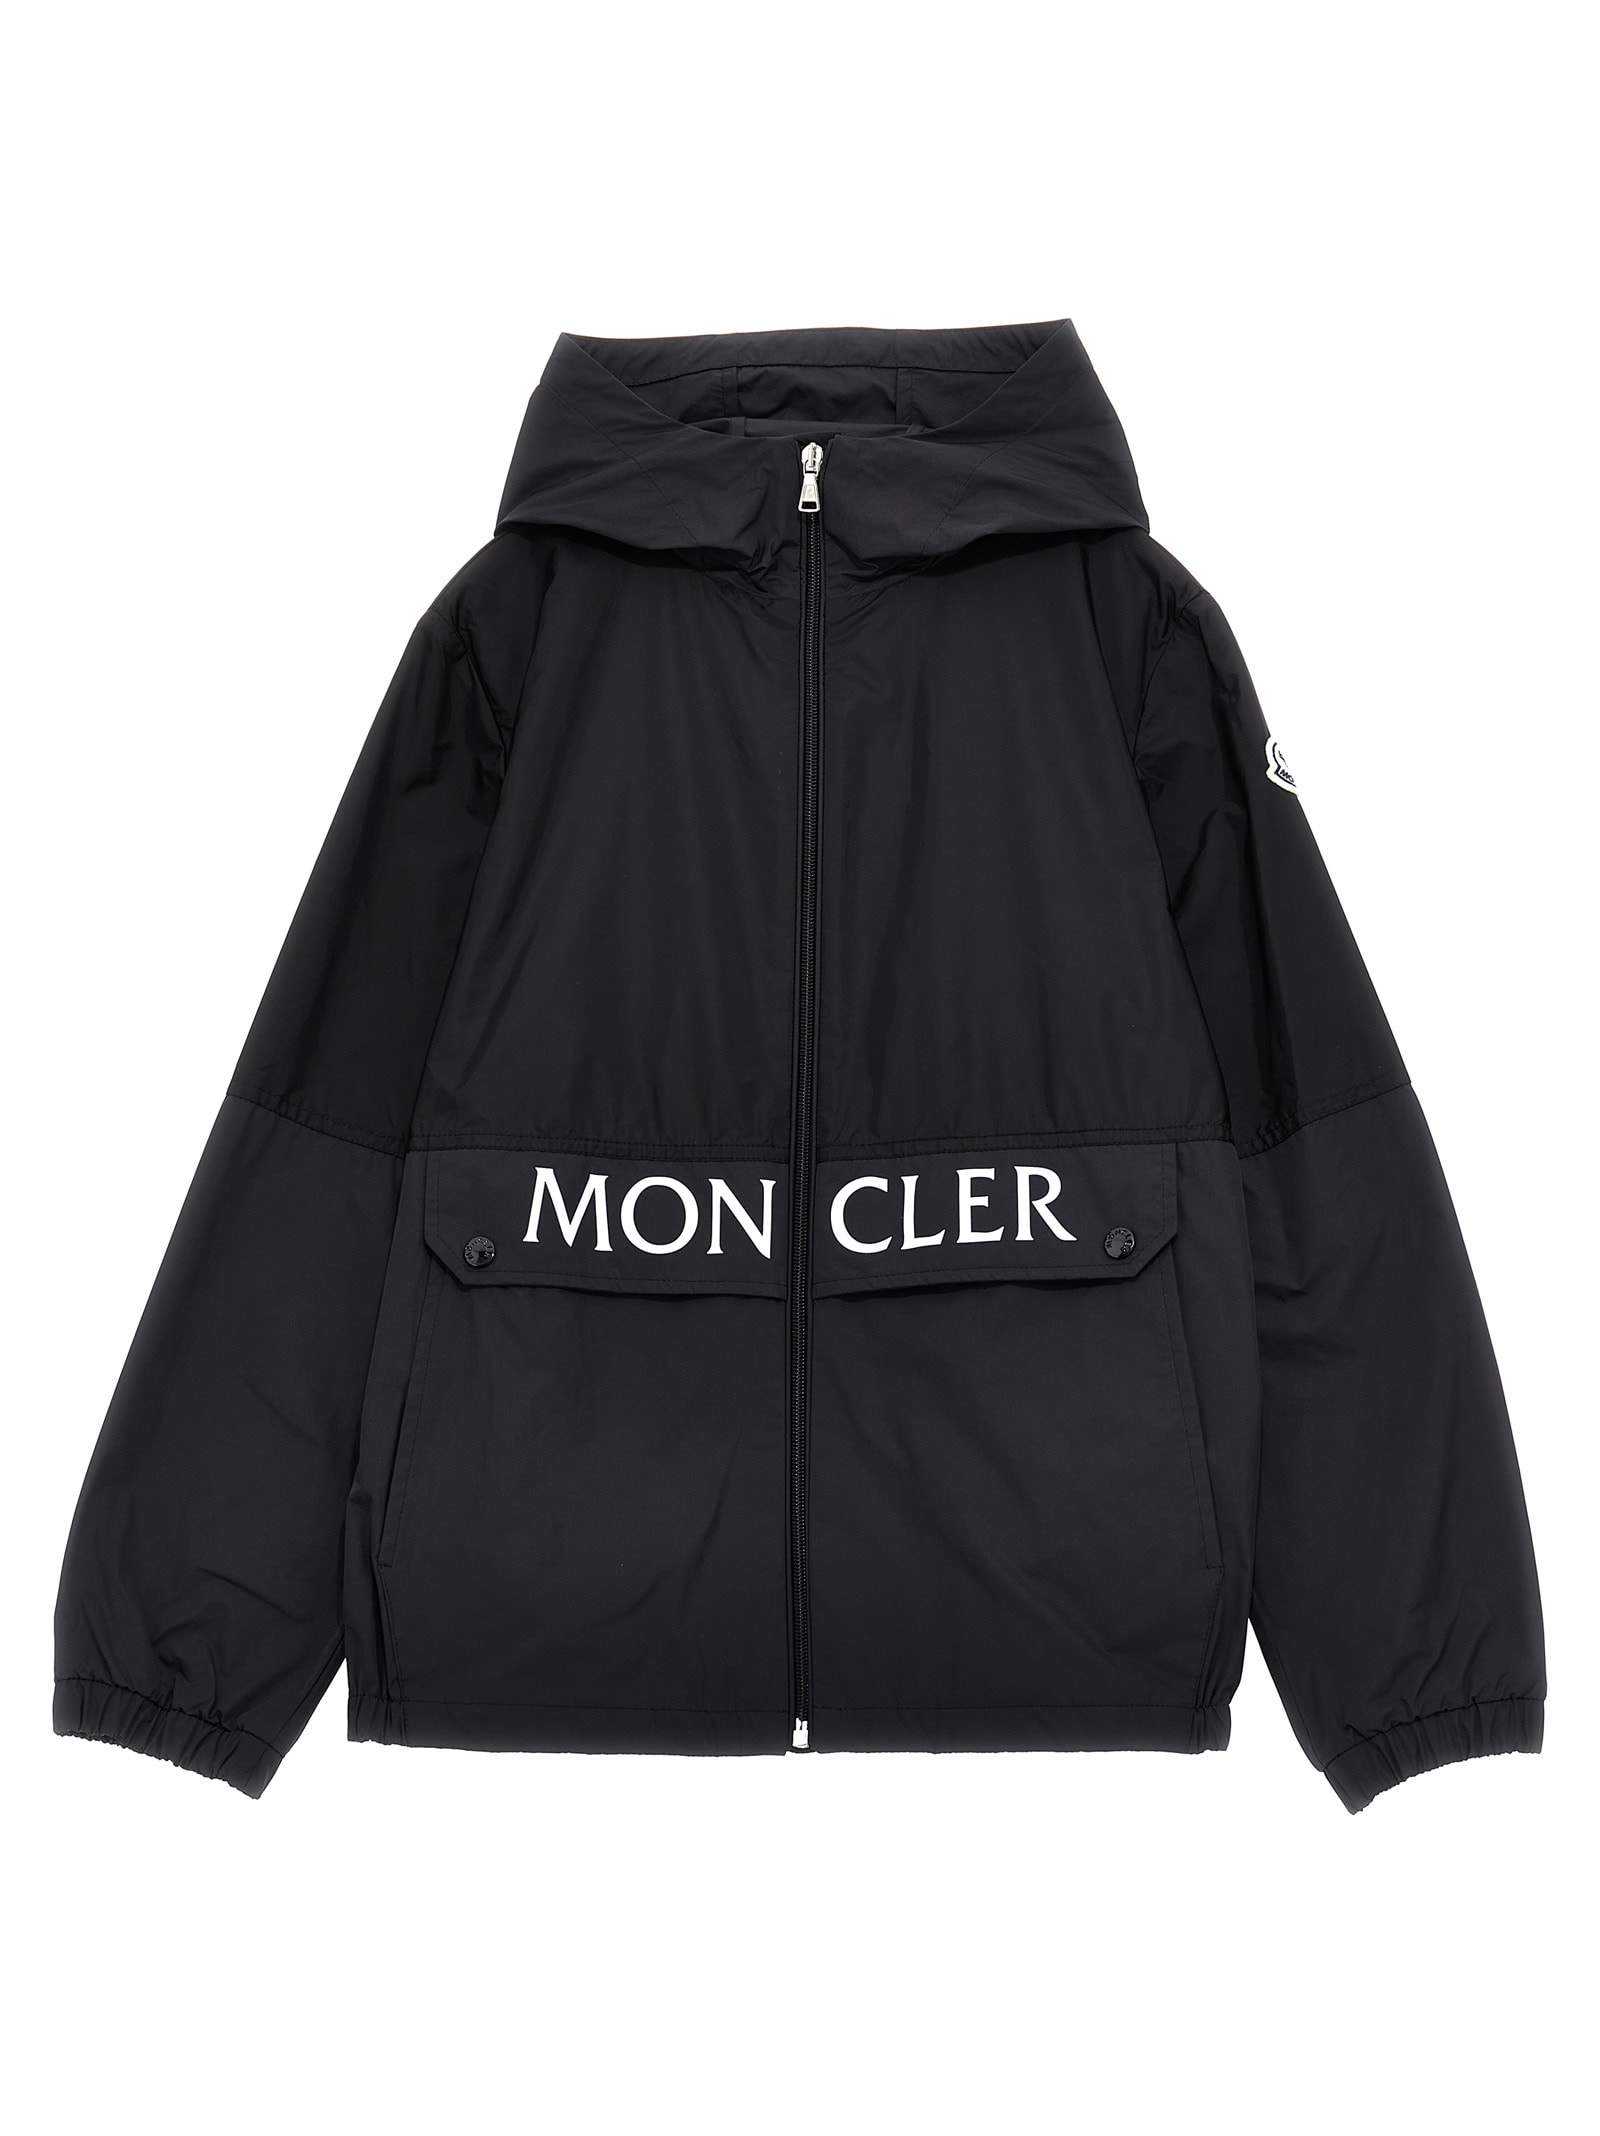 Moncler Kids' Joly Jacket In Black